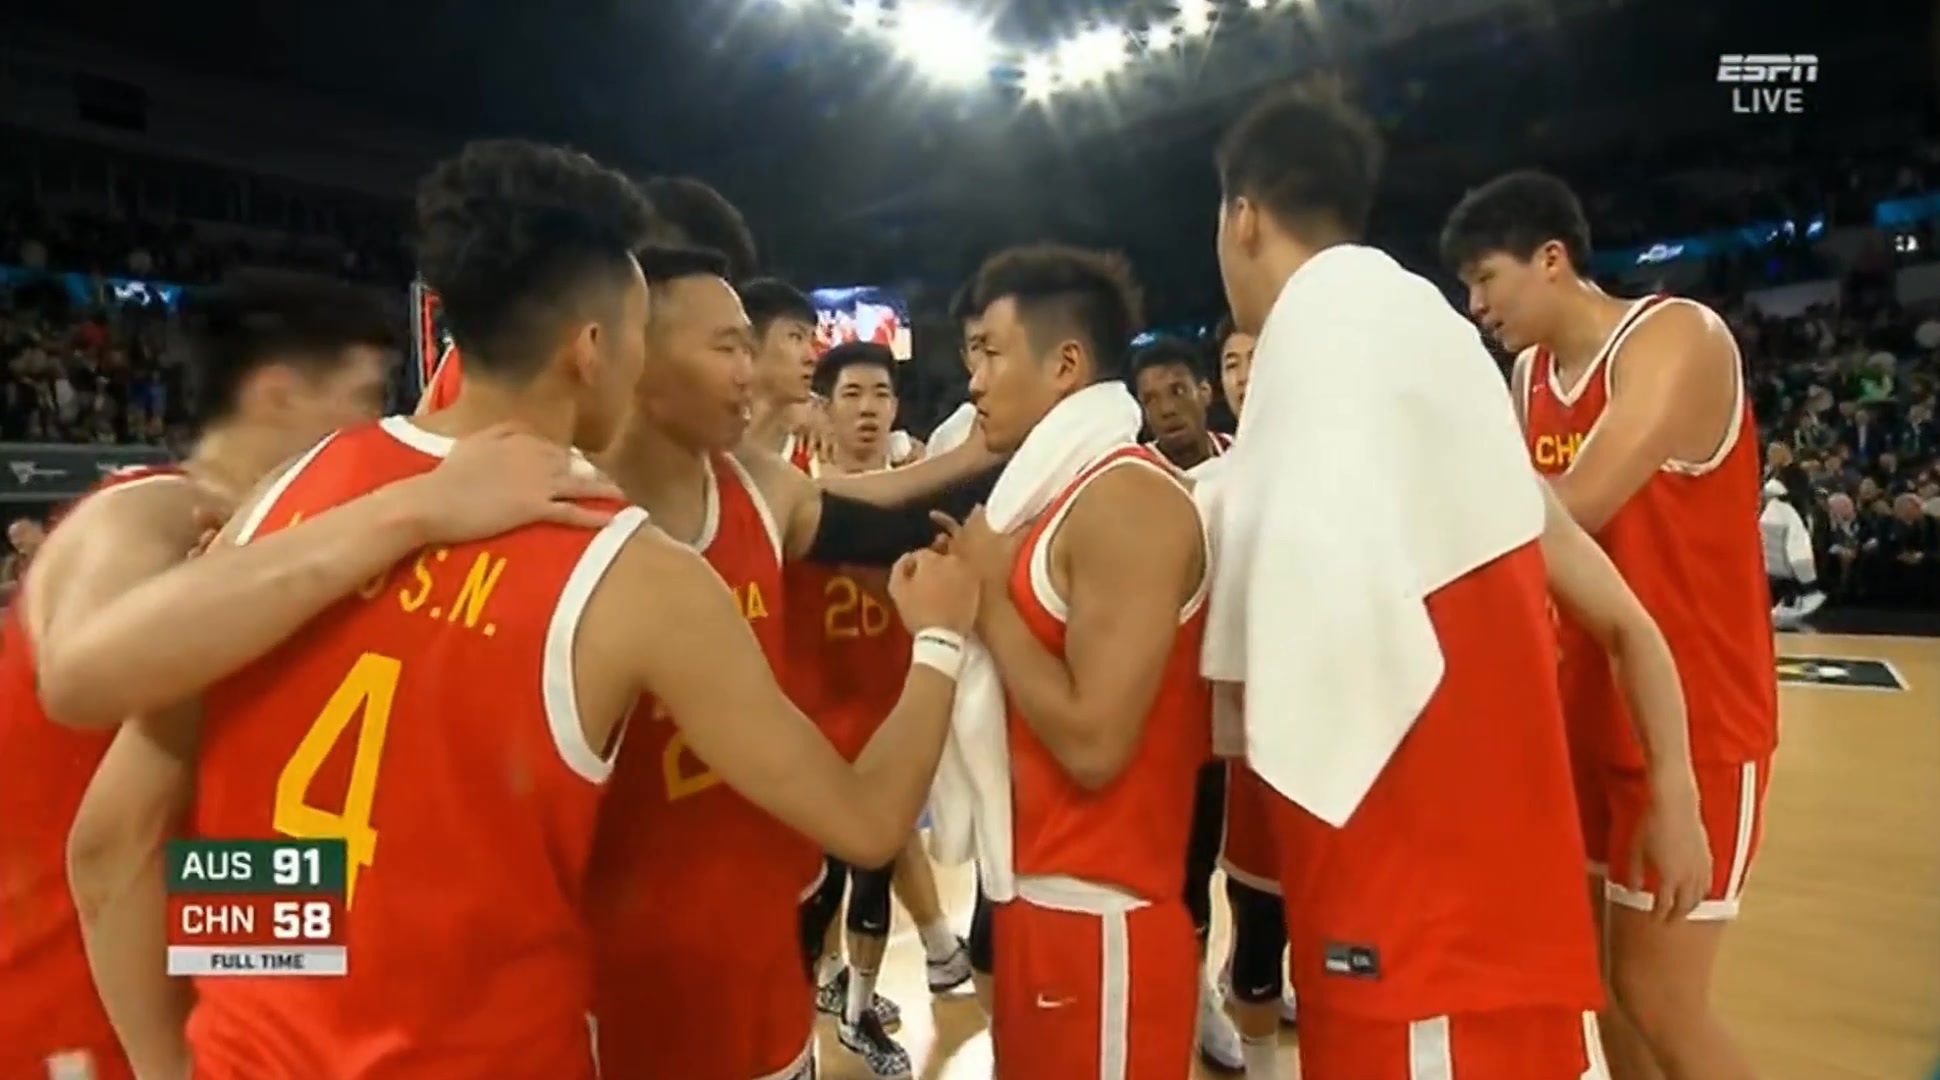 热身赛第二场中国男篮58-91不敌澳大利亚男篮